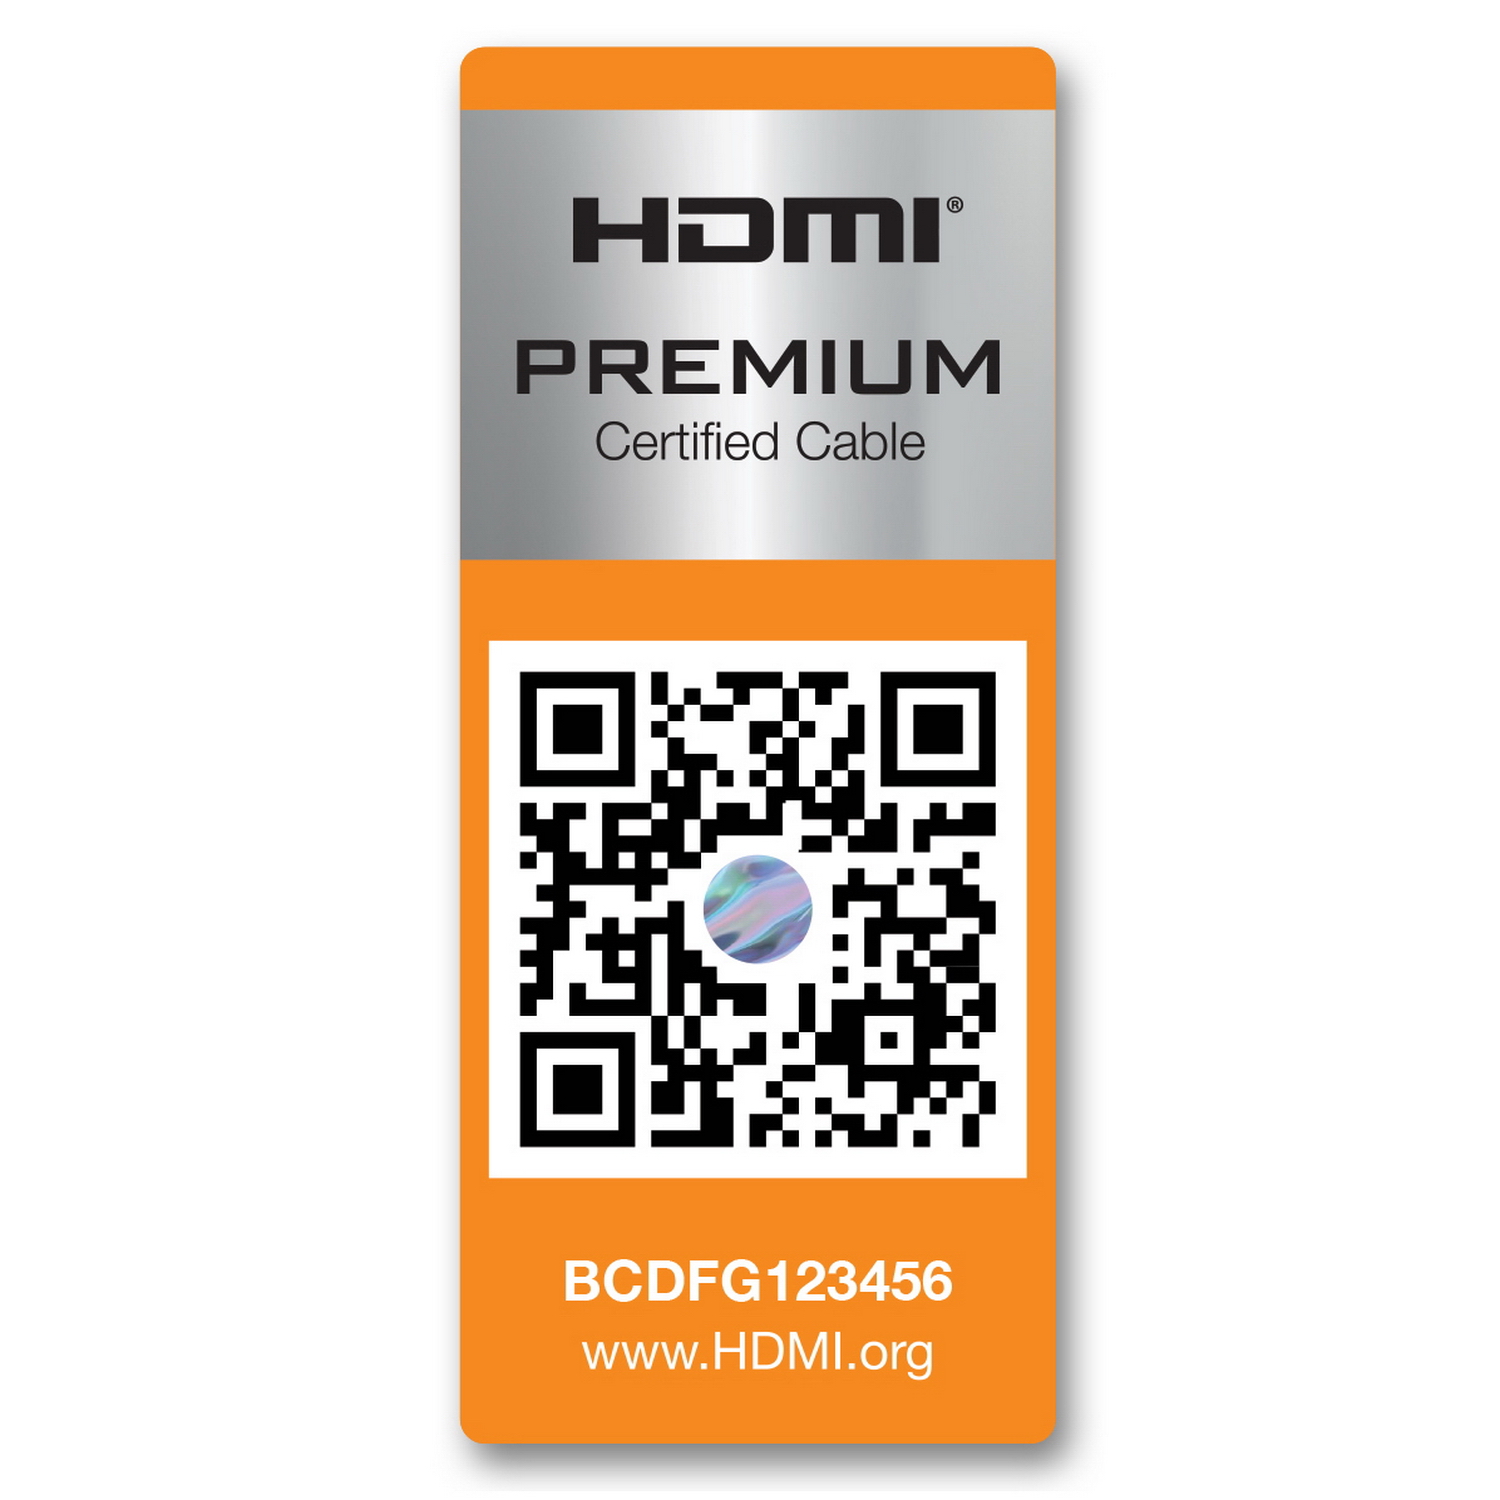 Aisens Câble HDMI 2.0 Certifié 4K HDR 60Hz Premium Mâle vers Mâle - Ultra HD 3D ARC - 4K - 0.5m - Couleur Noir